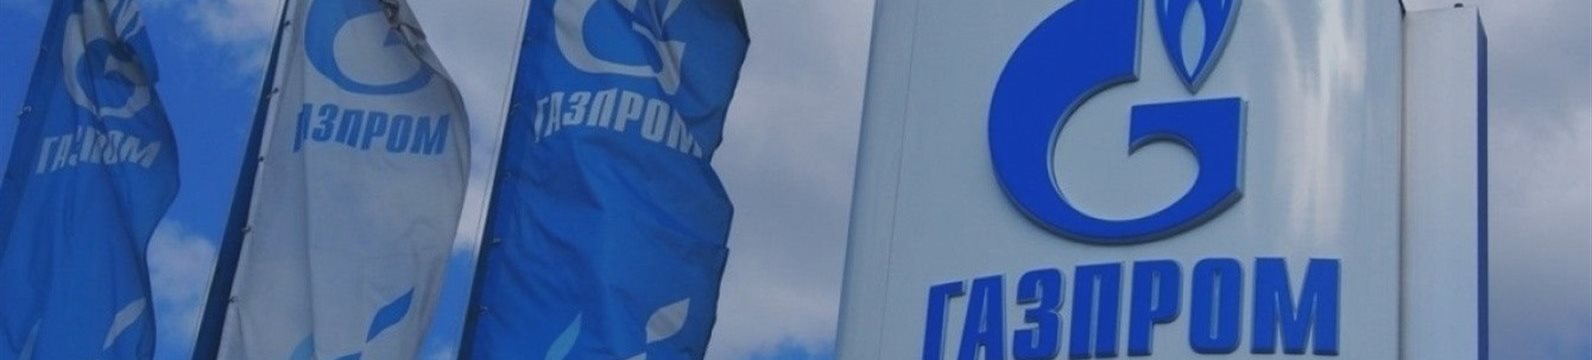 «Газпром» осторожно, но растёт, невзирая на противодействие